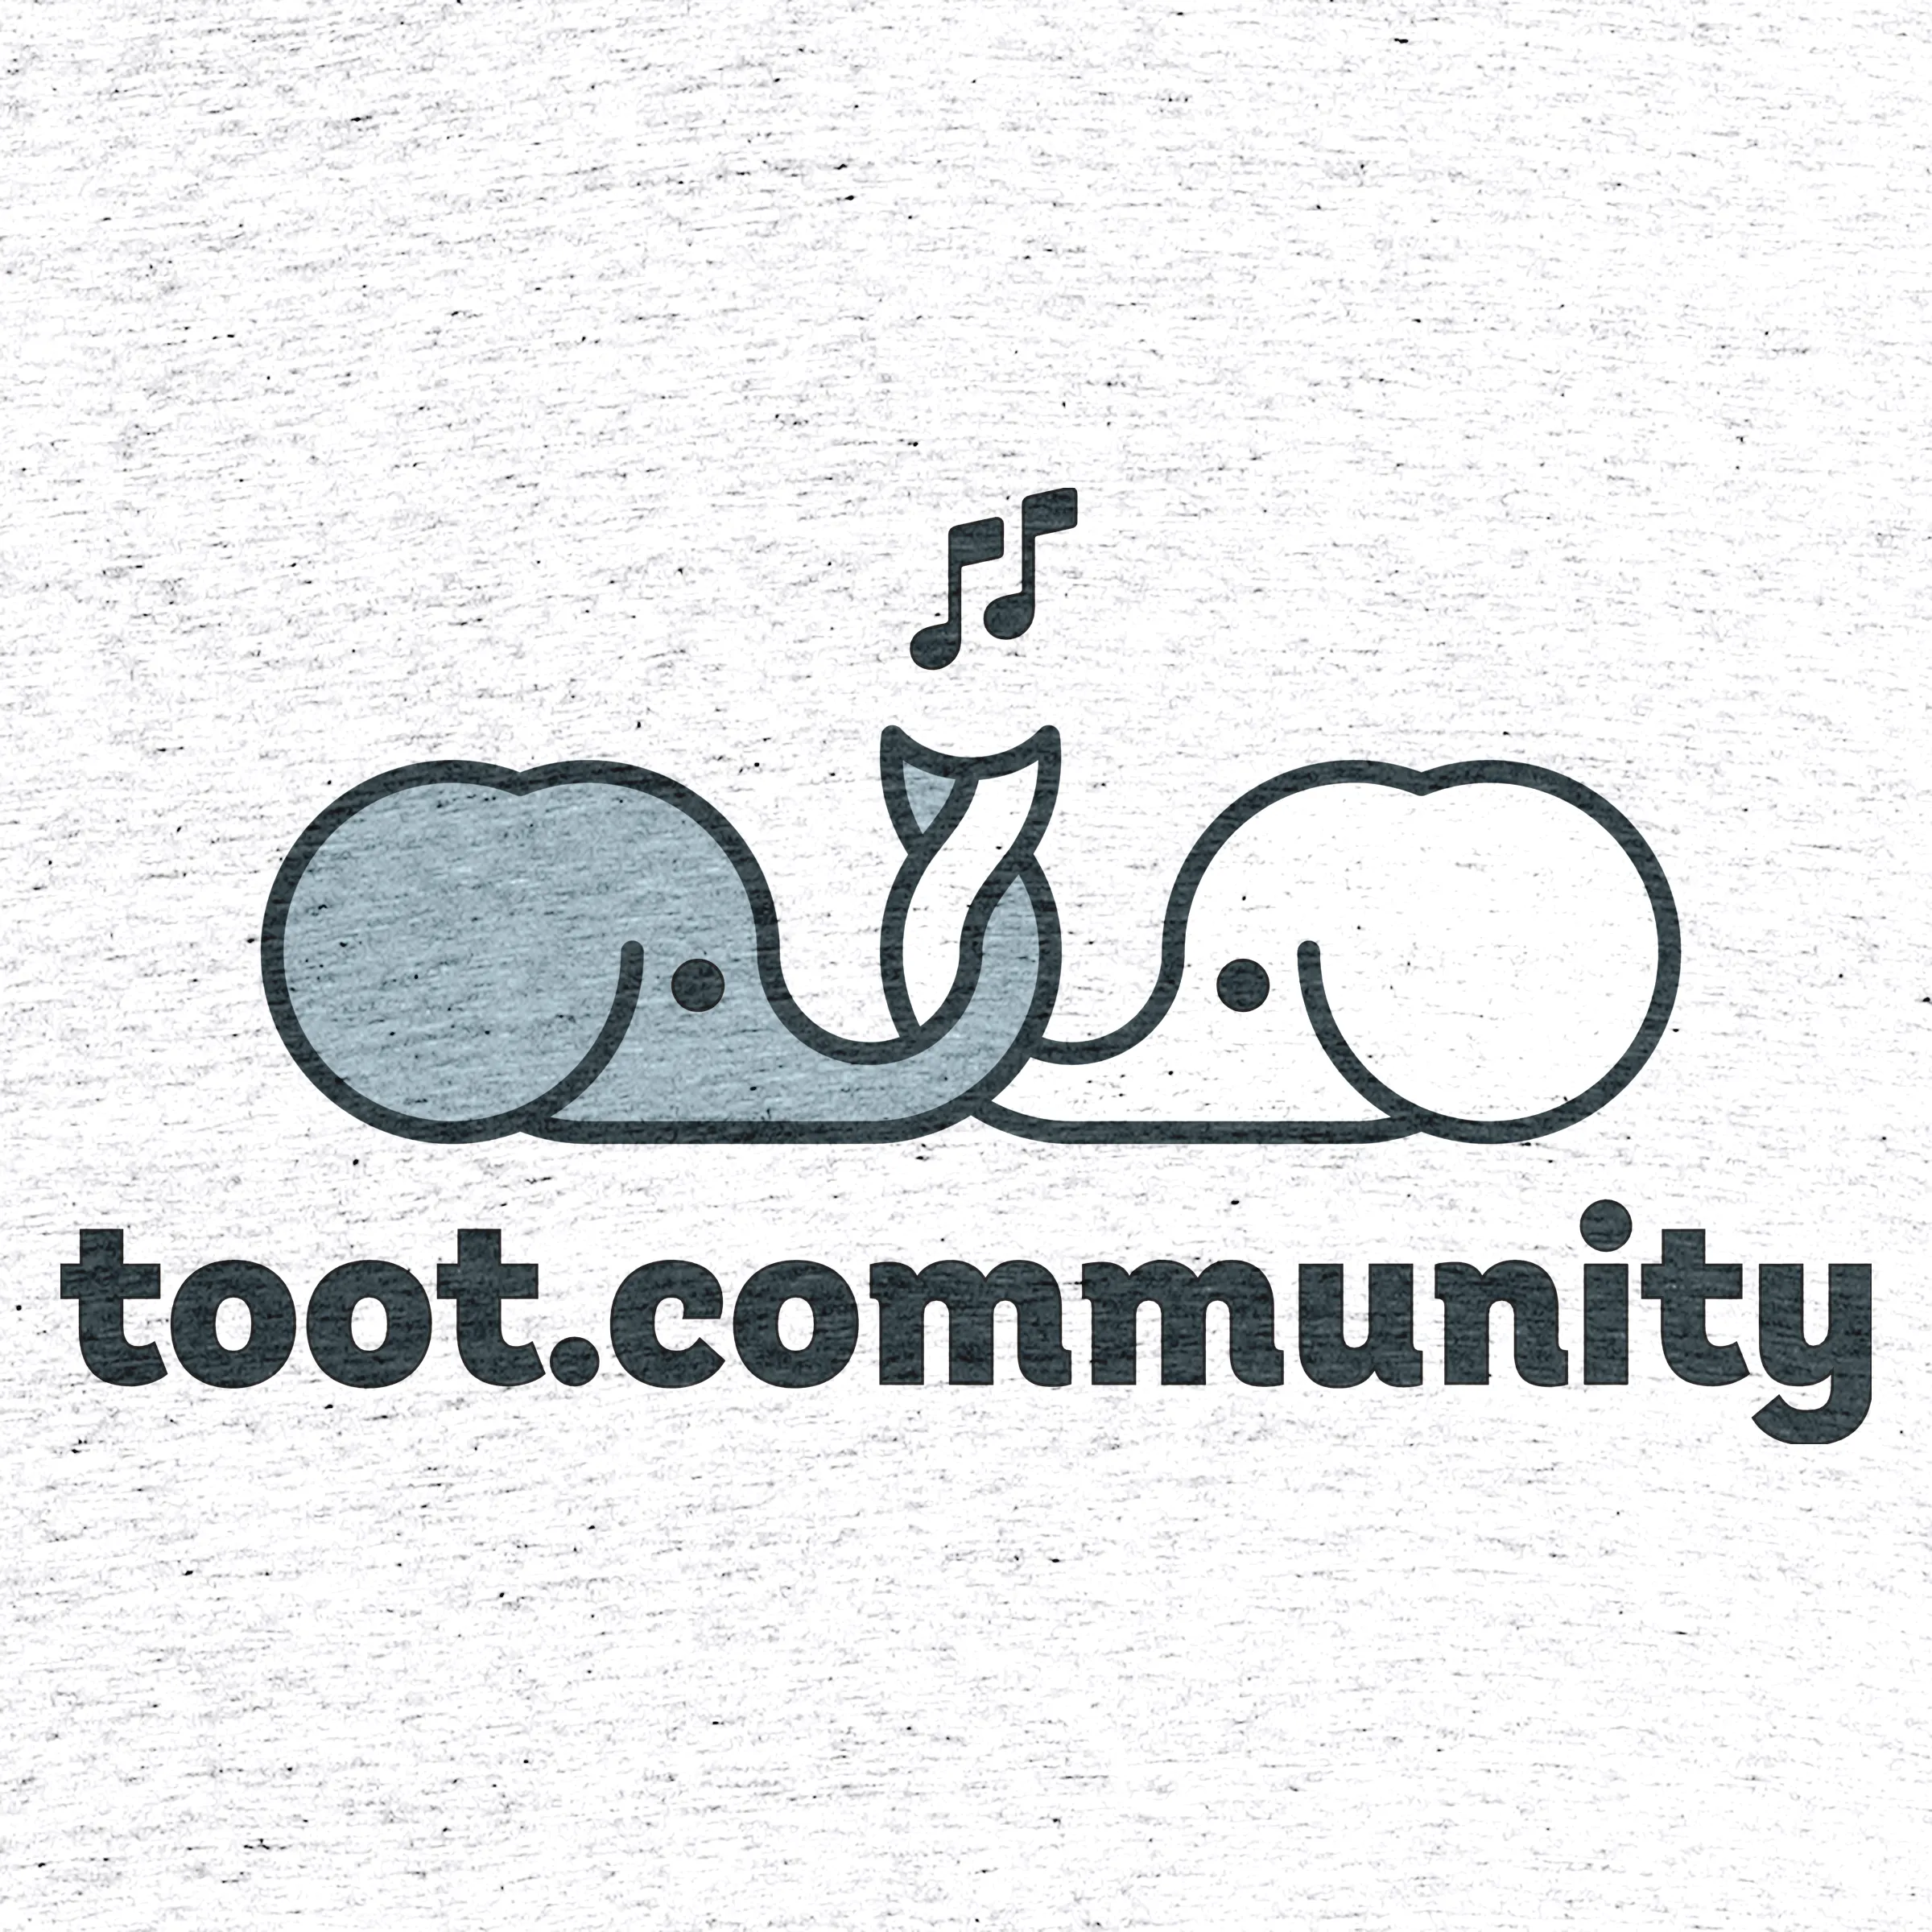 toot.community #1” graphic tee, pullover hoodie, tank, onesie